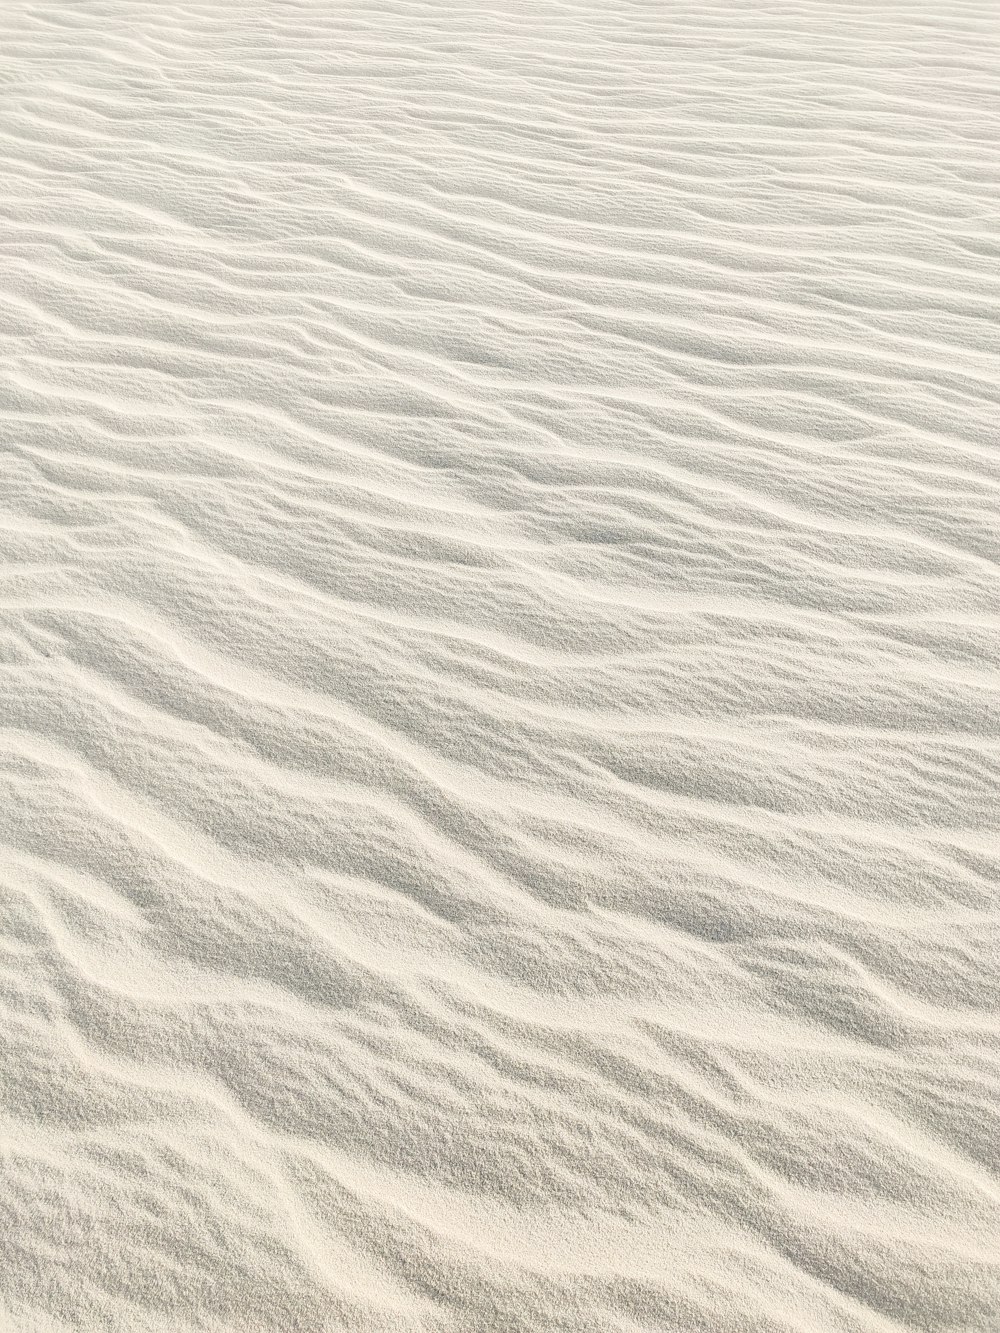 sabbia bianca con acqua durante il giorno